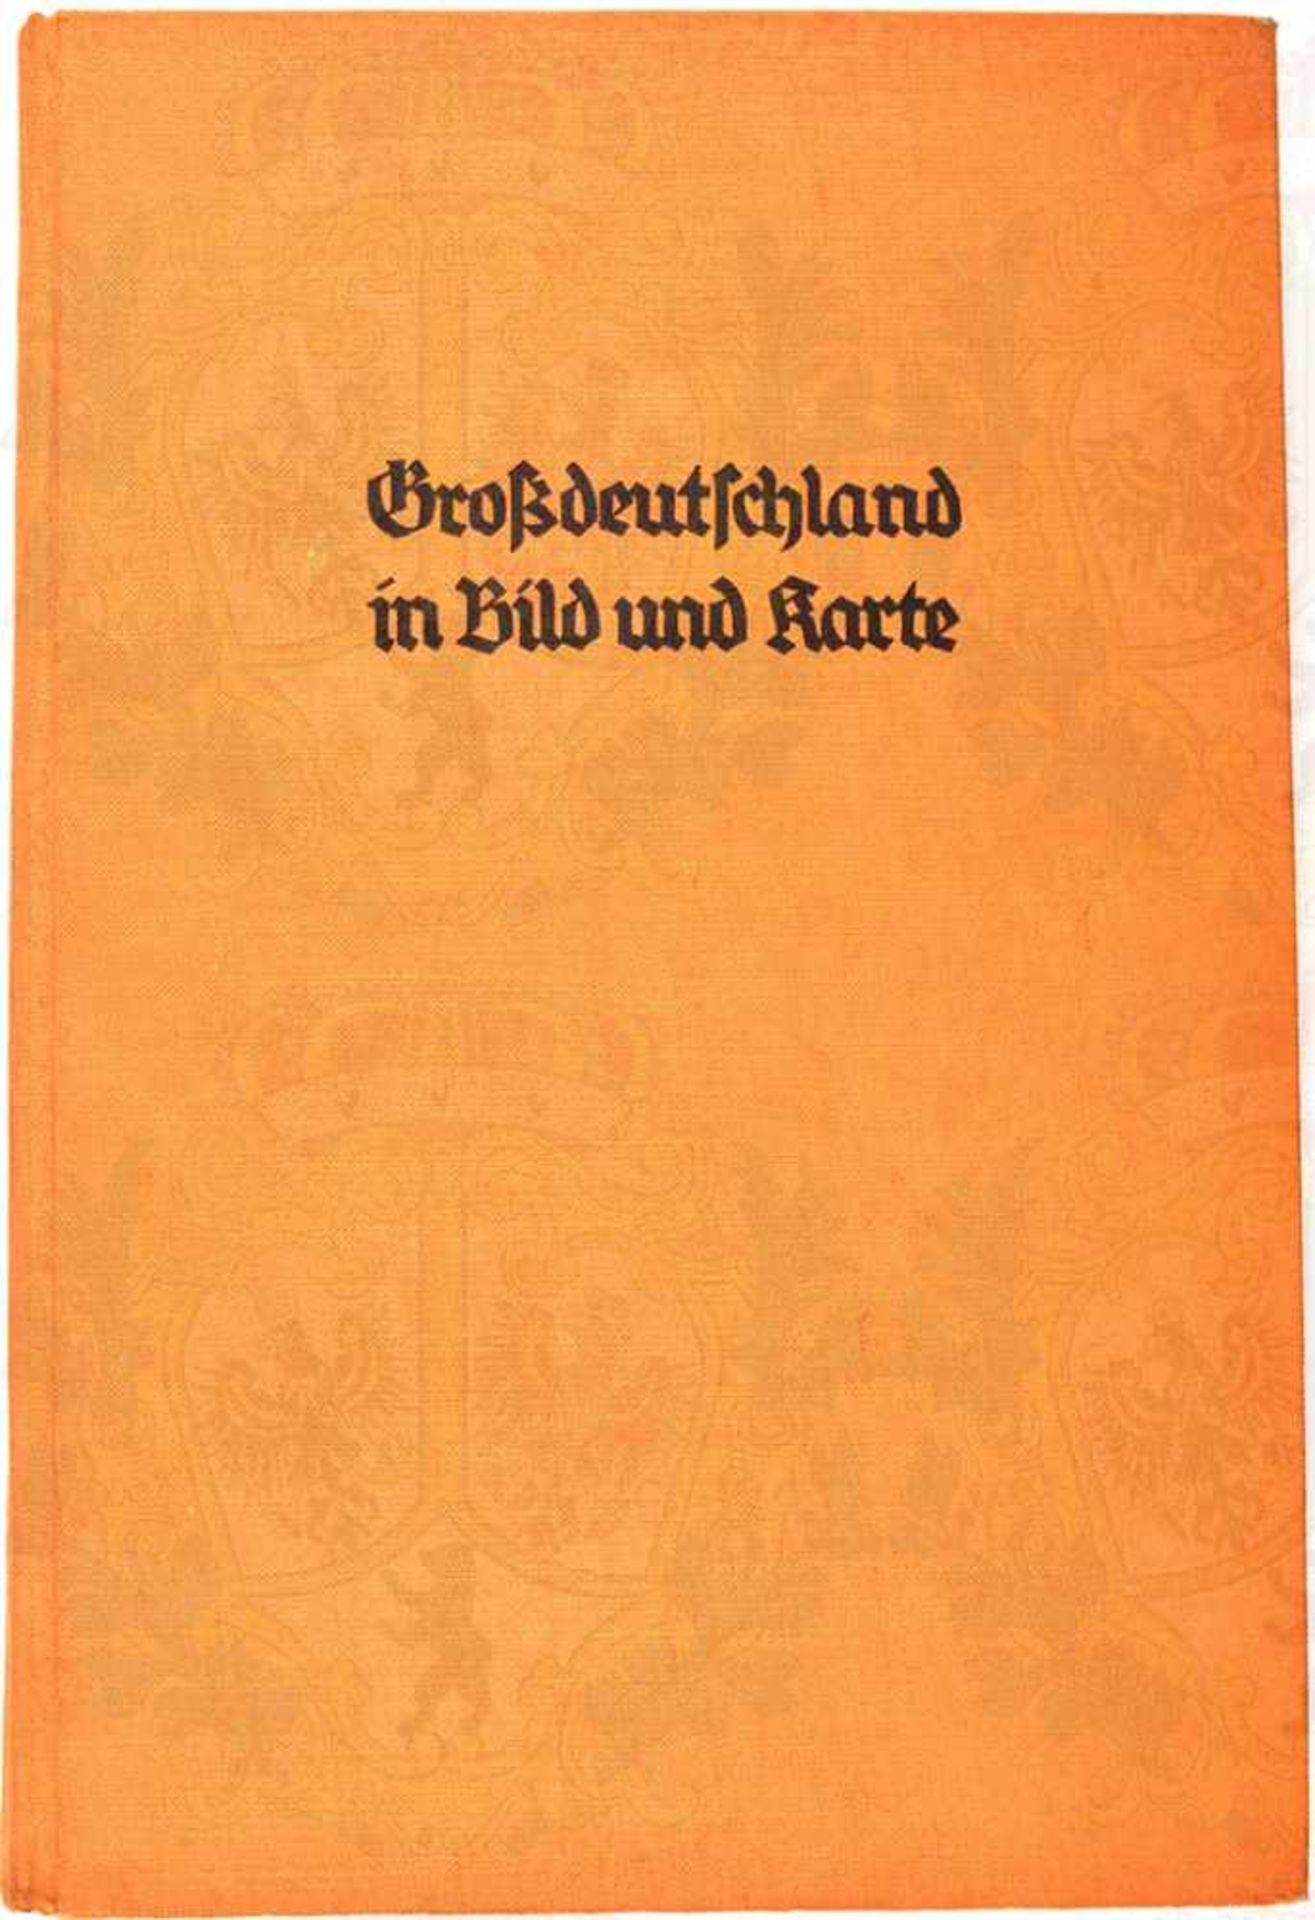 GROßDEUTSCHLAND IN BILD UND KARTE, Leipzig 1940, 206 S., zahlr. Fotos u. Karten, dabei Gau- und